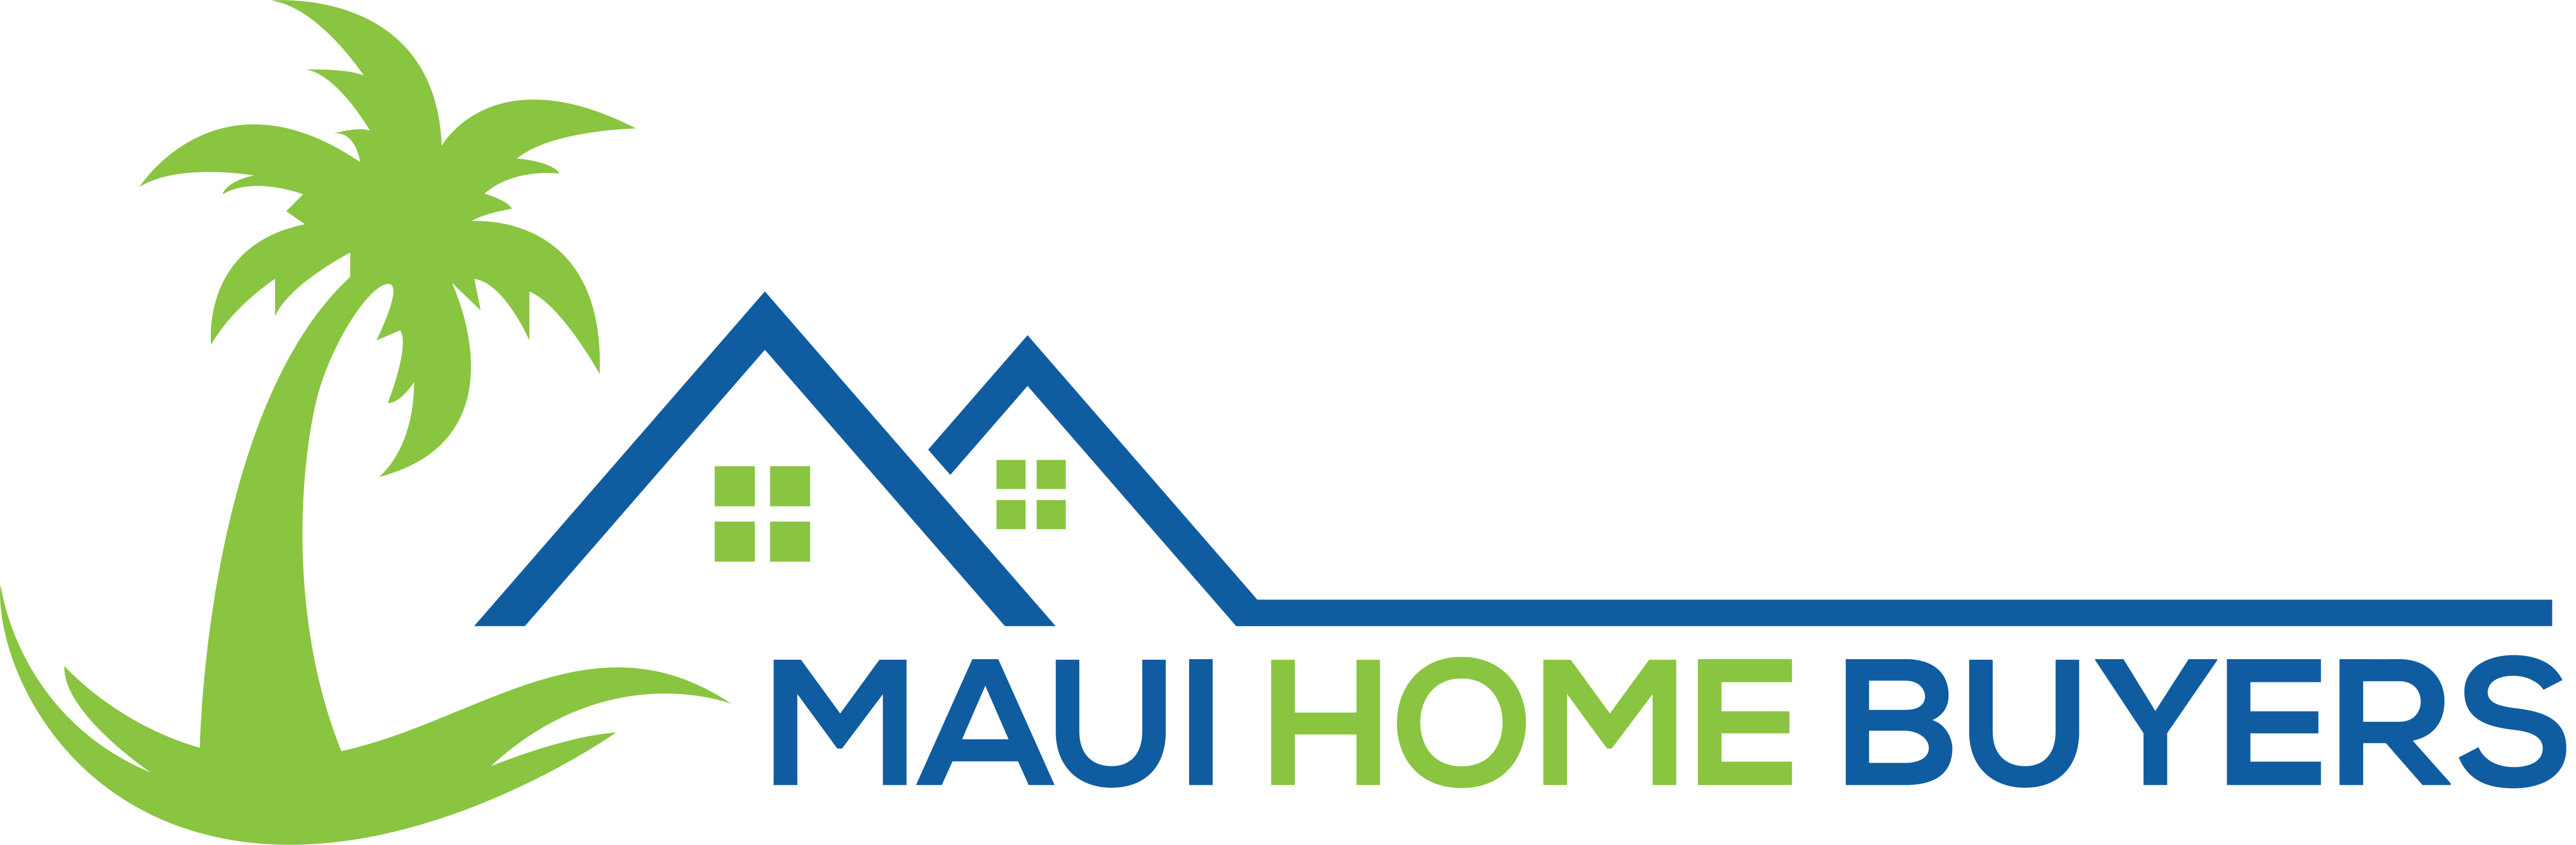 Maui Home Buyers logo